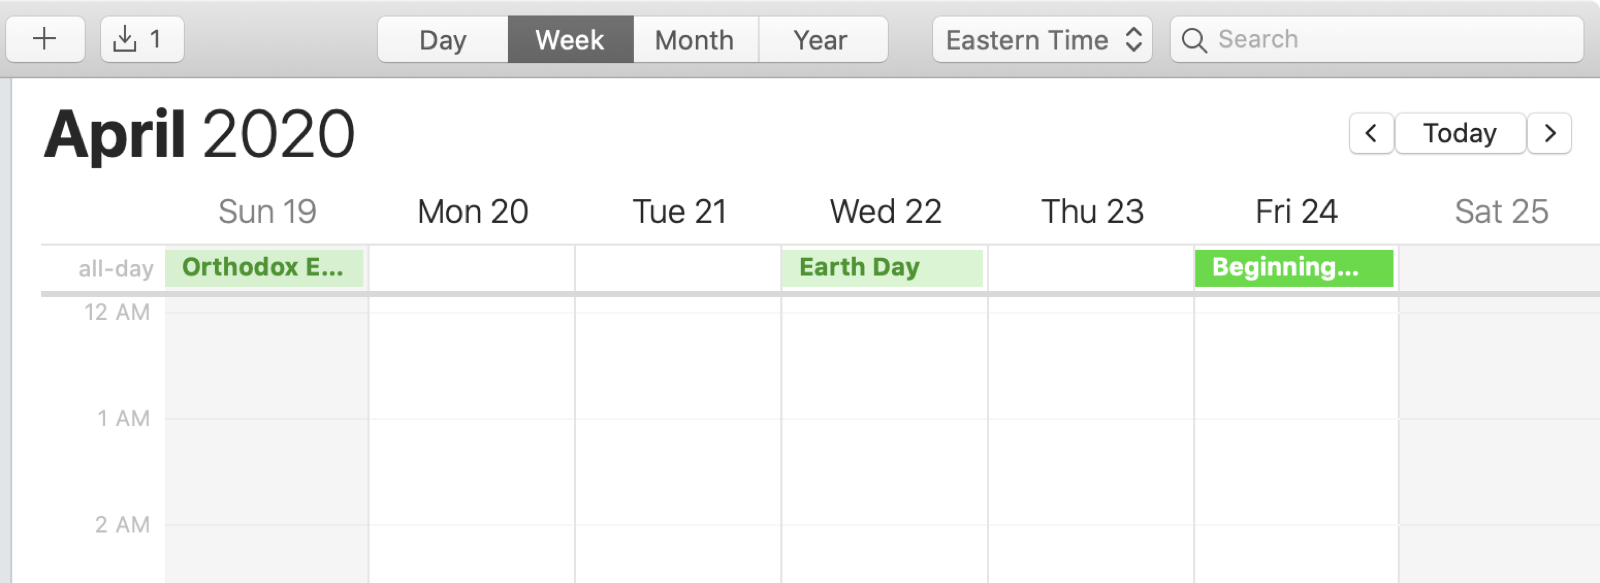 https://media.idownloadblog.com/wp-content/uploads/2020/02/Calendar-Mac-All-Day-Events.jpg